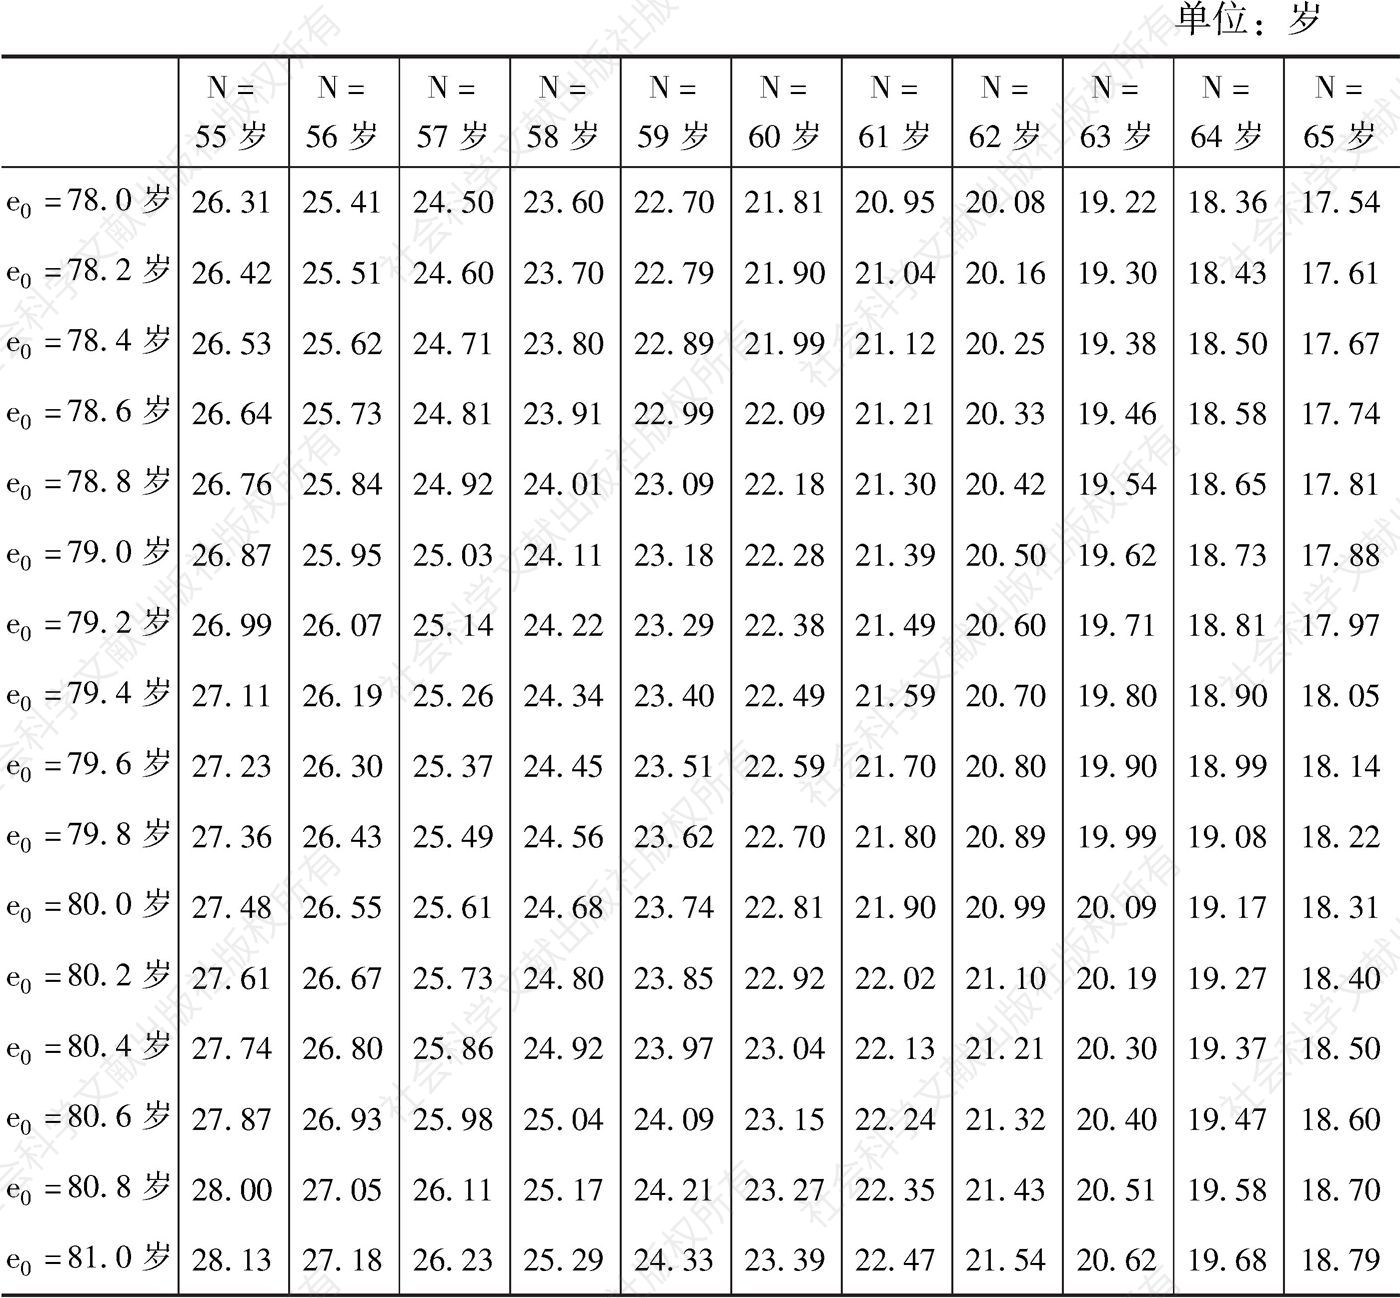 表6-5 中国出生预期寿命对应的退休期望寿命计算（女性）